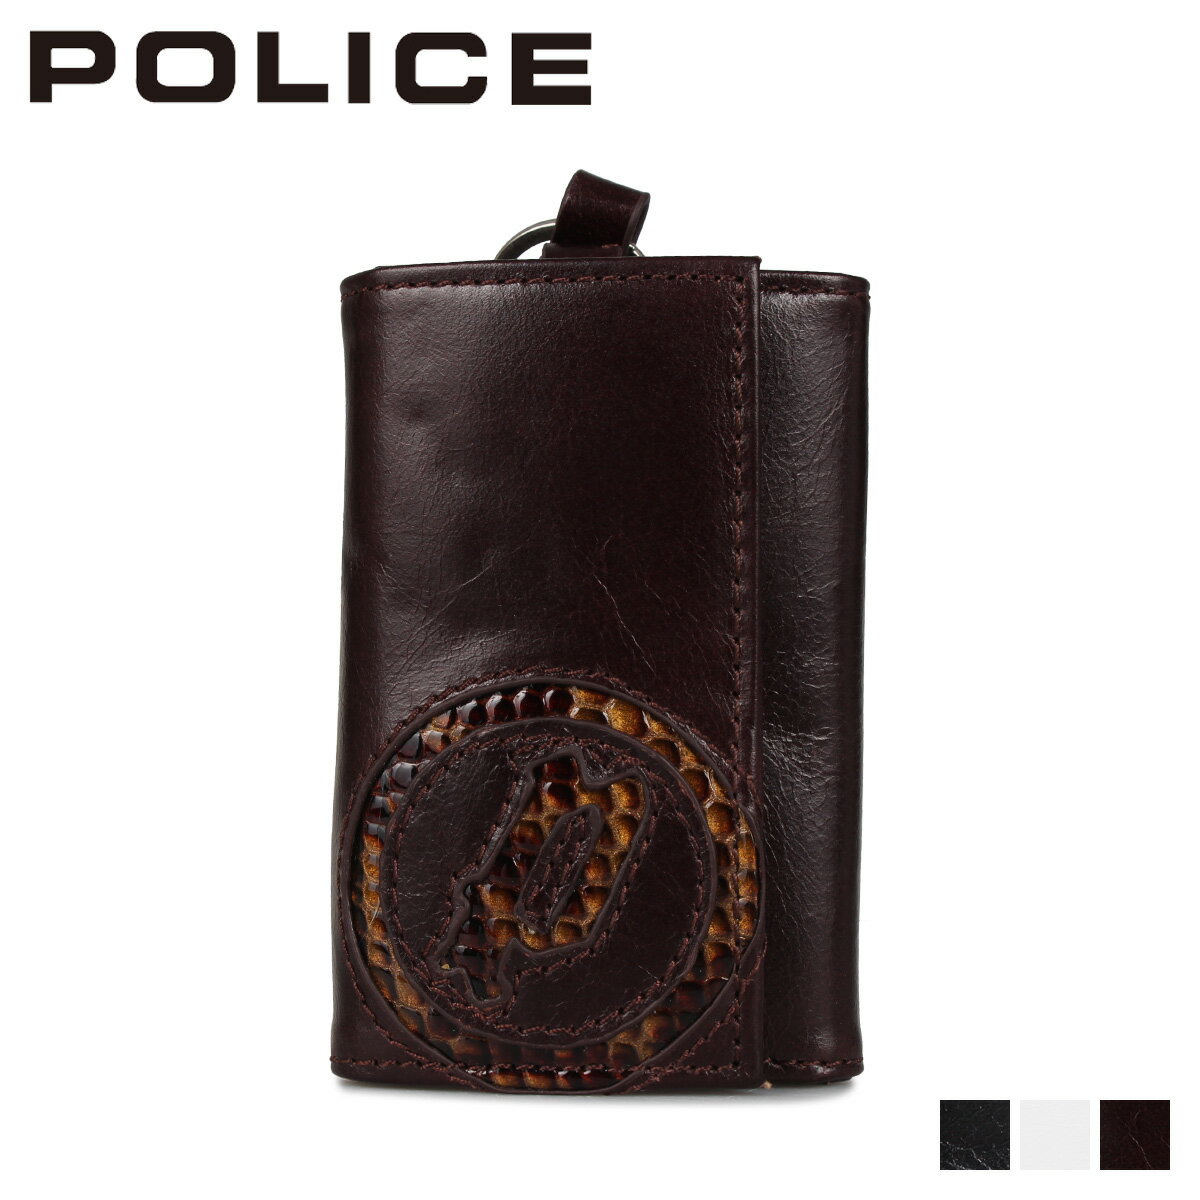 ポリス POLICE キーケース キーホルダー イーブン メンズ 4連 本革 KEY CASE ブラック ホワイト ダーク ブラウン 黒 白 PA-5500